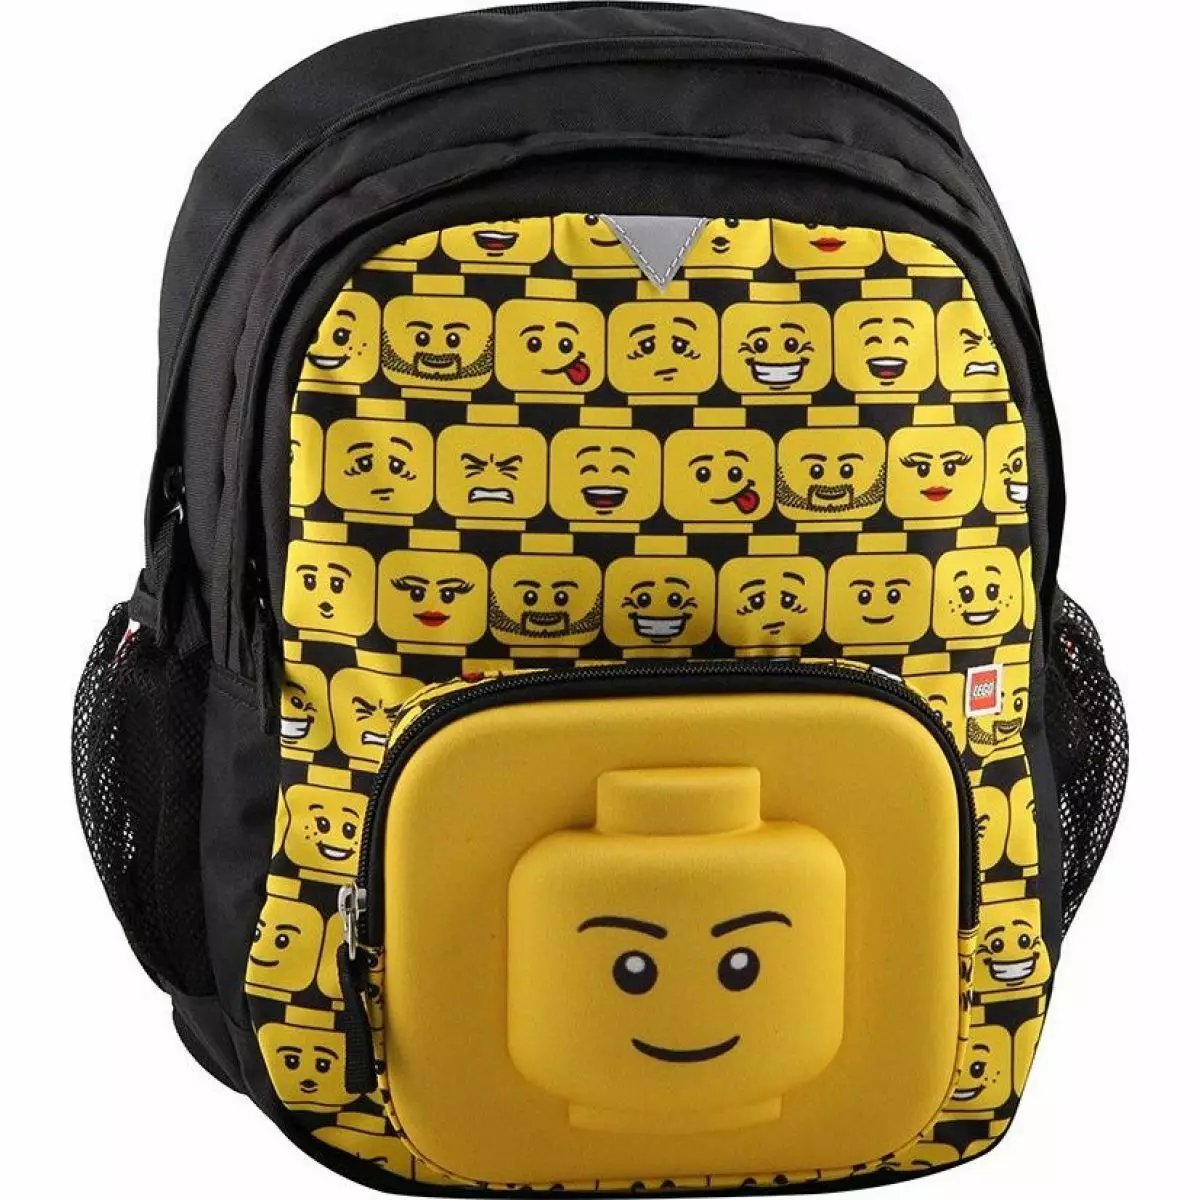 Lego Backpacks: gwardjani tal-iskola għall-bniet u s-subien, bagalji b'lura ortopedika għall-ewwel gradaturi. Kif taħsel il-mudell għall-iskola? 15397_39